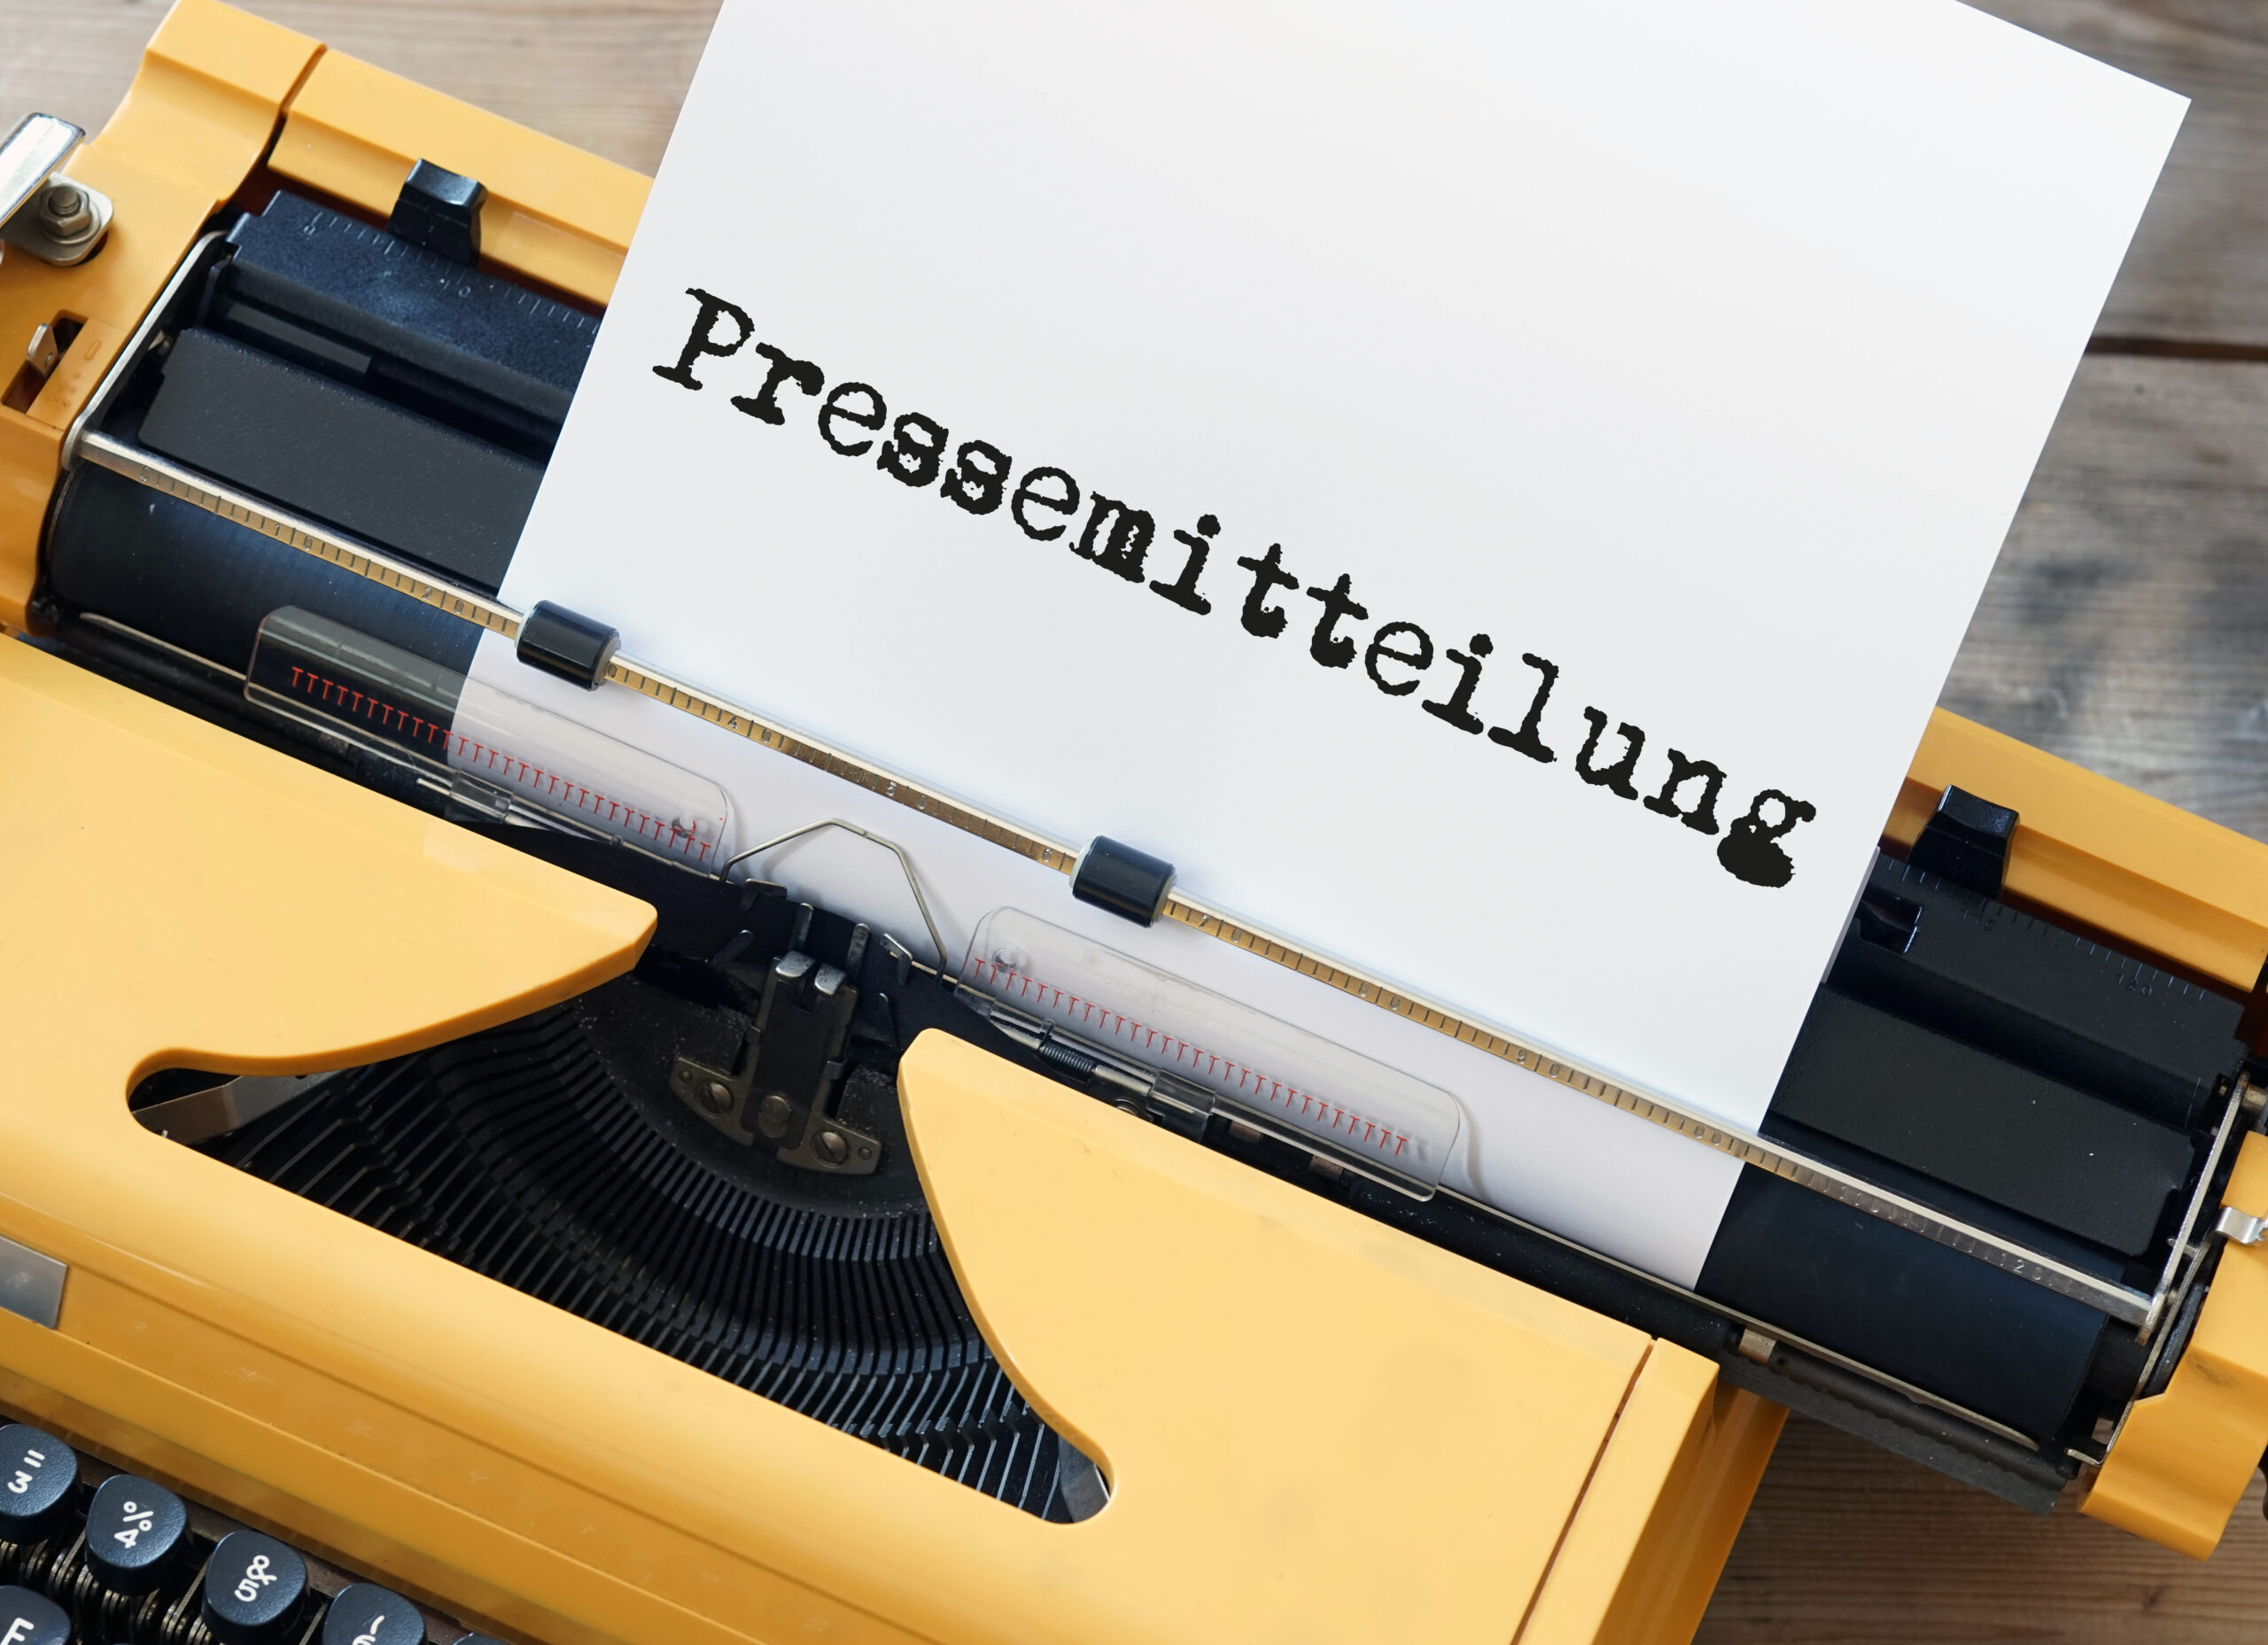 Ein Blatt mit der Überschrift "Pressemitteilung" steckt in einer Schreibmaschine